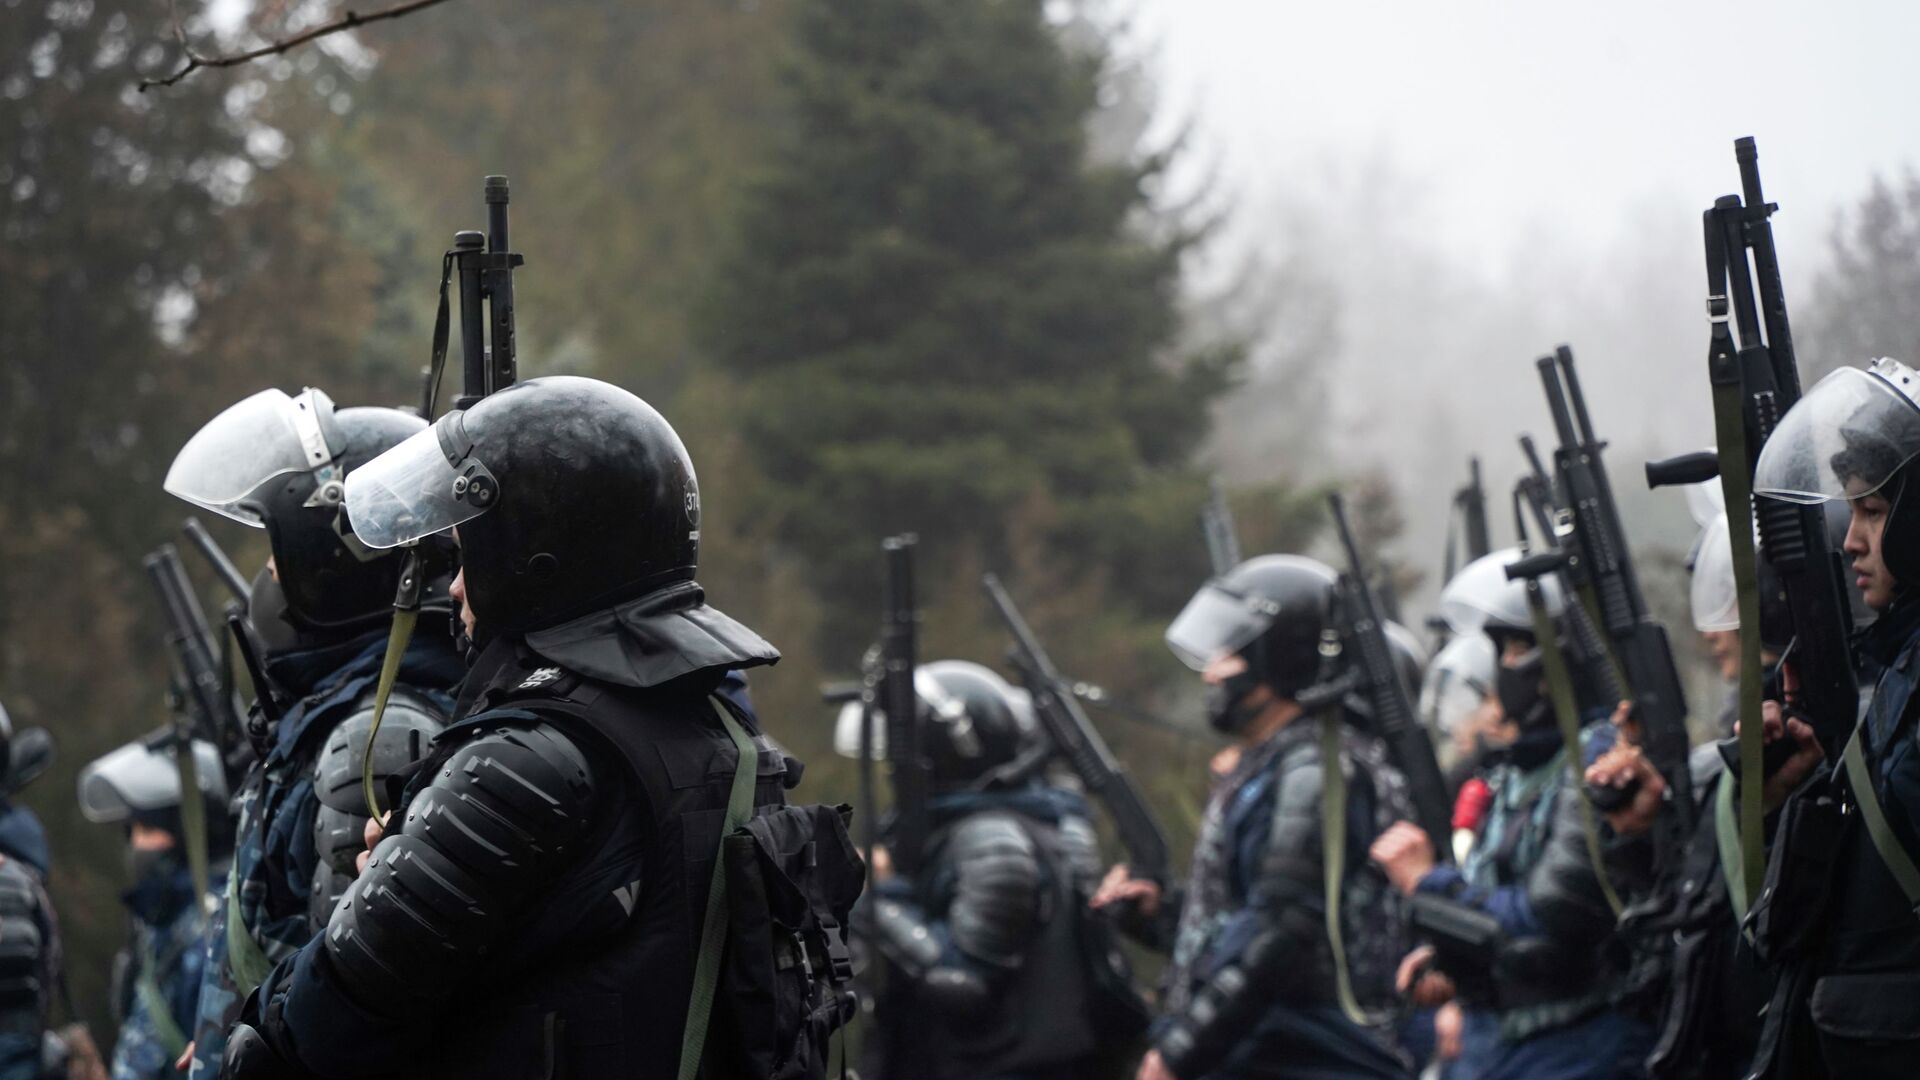 Офицеры ОМОНа держат оружие наготове, пытаясь остановить демонстрантов во время акции протеста в Алматы - Sputnik Казахстан, 1920, 06.01.2022